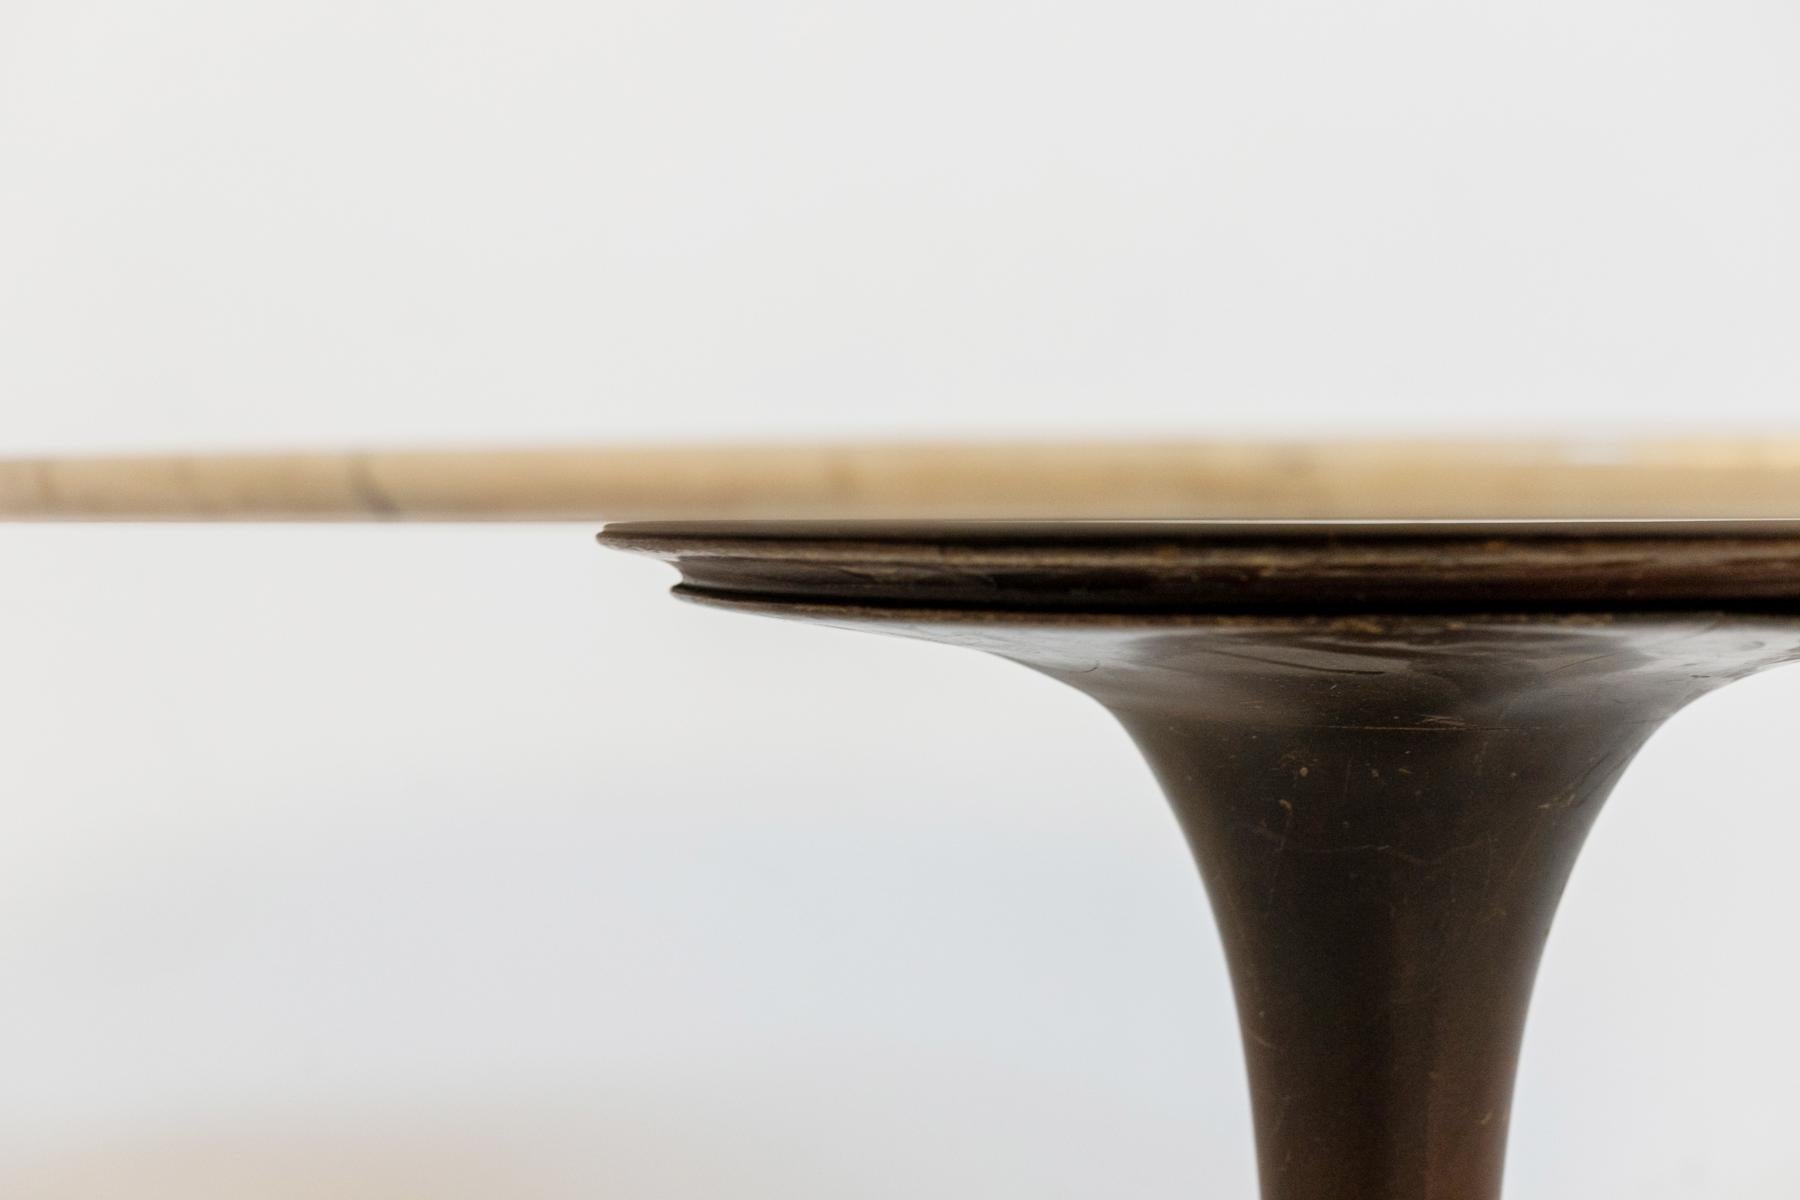 Wunderschöner Holztisch, entworfen von Luigi Massoni in den 70er Jahren für die italienische Edelmanufaktur Boffi.
Der Tisch hat eine runde Struktur ganz aus edlem Holz, die von einem einzigen Stiel getragen wird, der auf einem runden Sockel